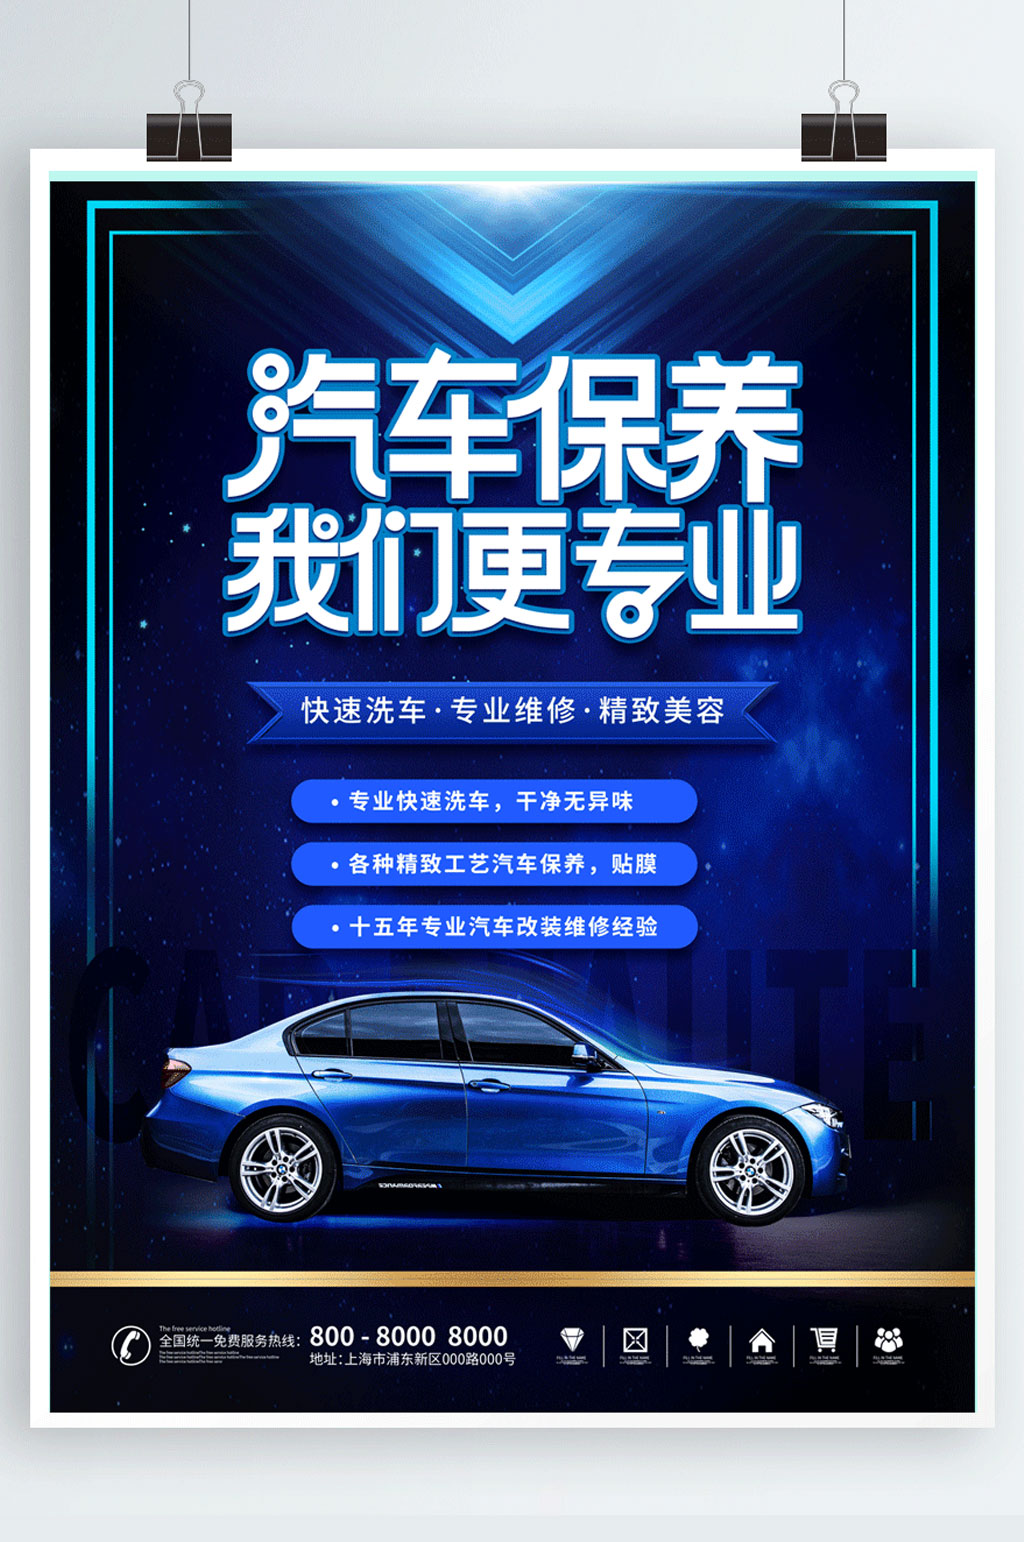 风蓝色科技汽车美容保养宣传海报素材下载,本次作品主题是平面广告